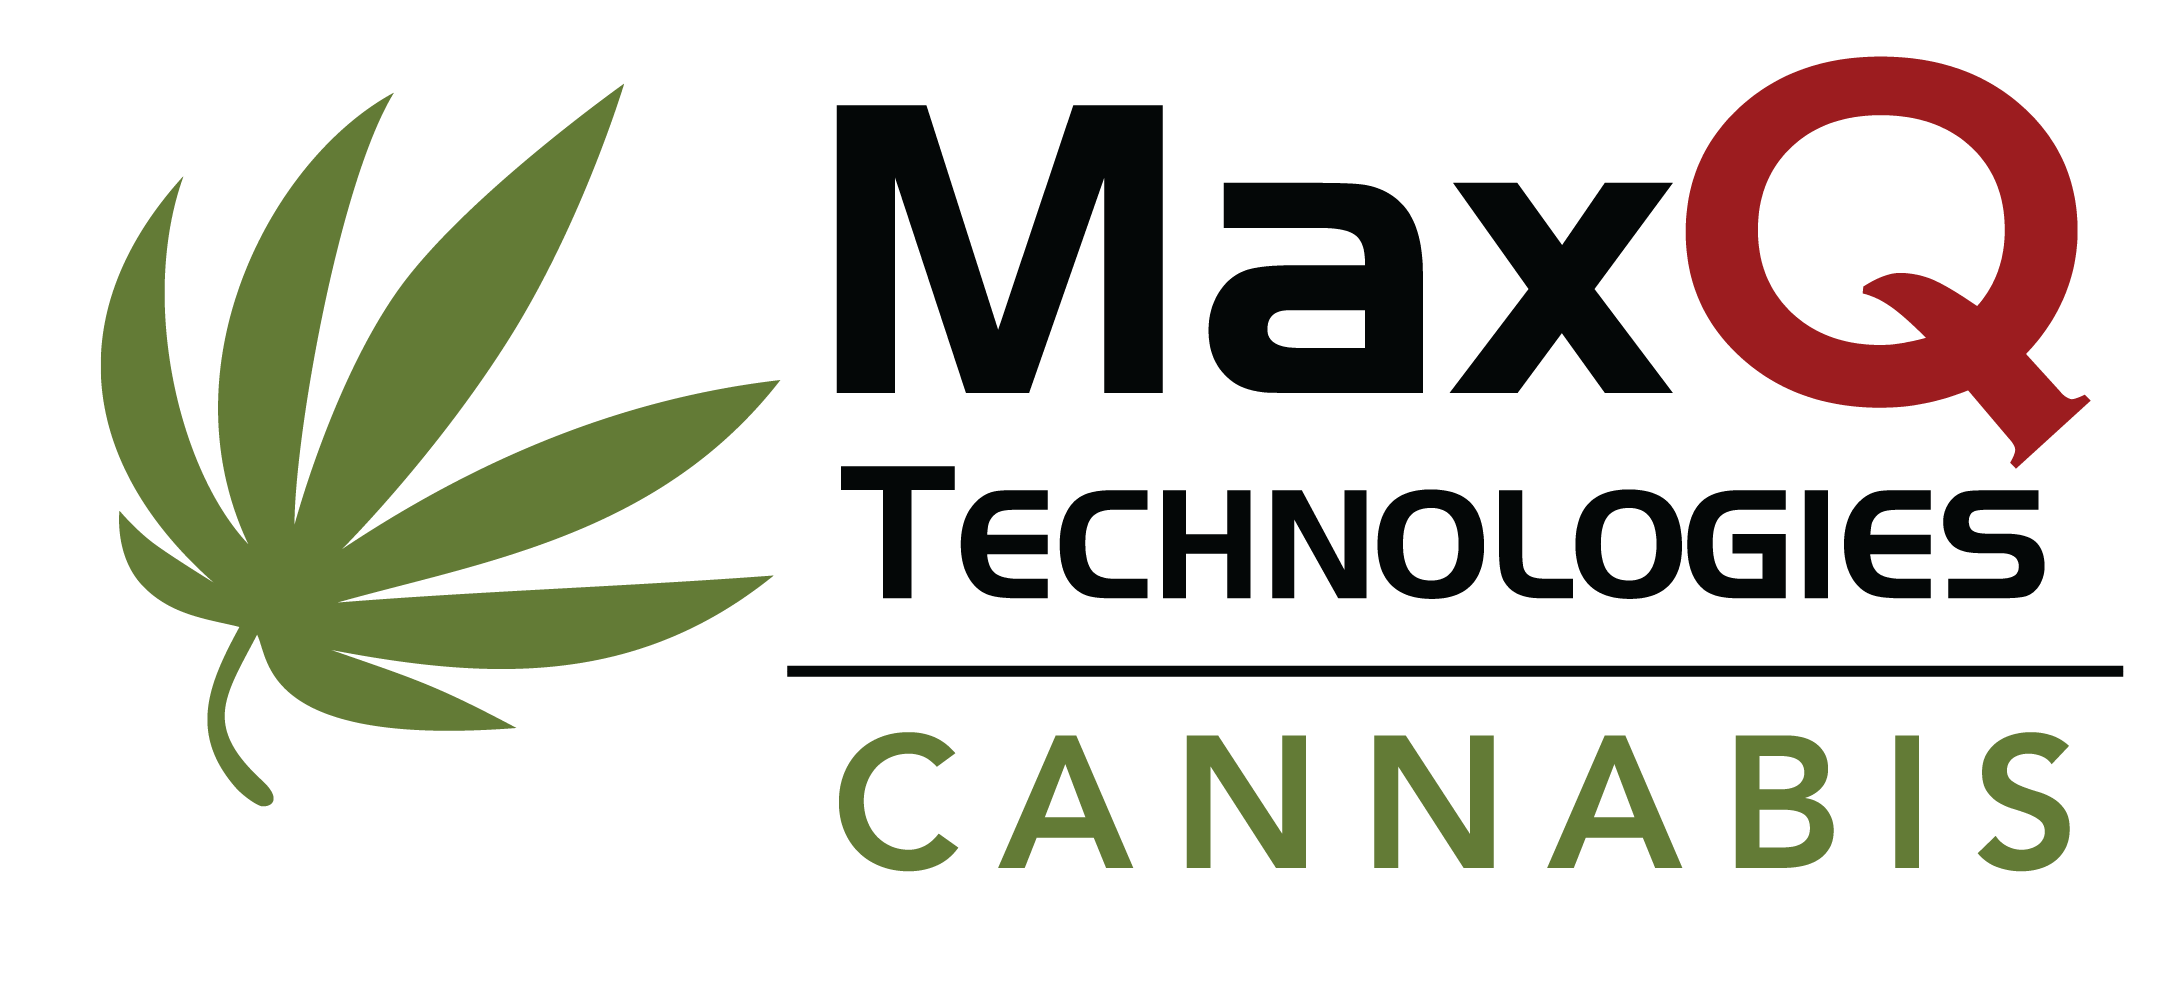 MaxQ Cannabis Management Solution - MaxQ Technologies